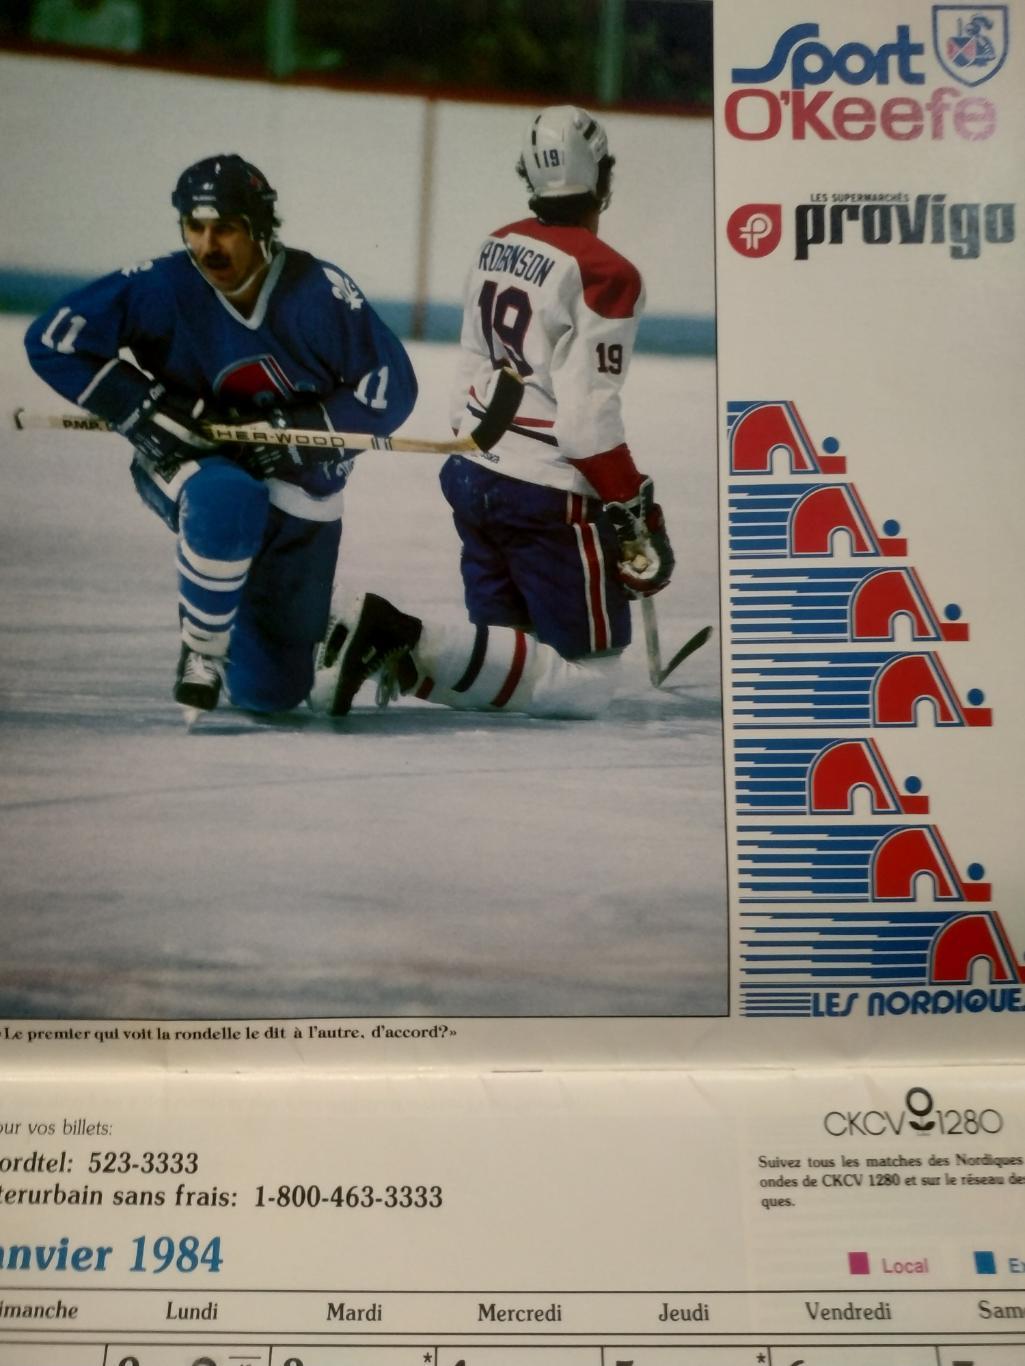 ХОККЕЙ КАЛЕНДАРЬ НХЛ КВЕБЕК НОРДИКС 1984 NHL LES NORDIQUES OFFICIAL CALENDAR 1